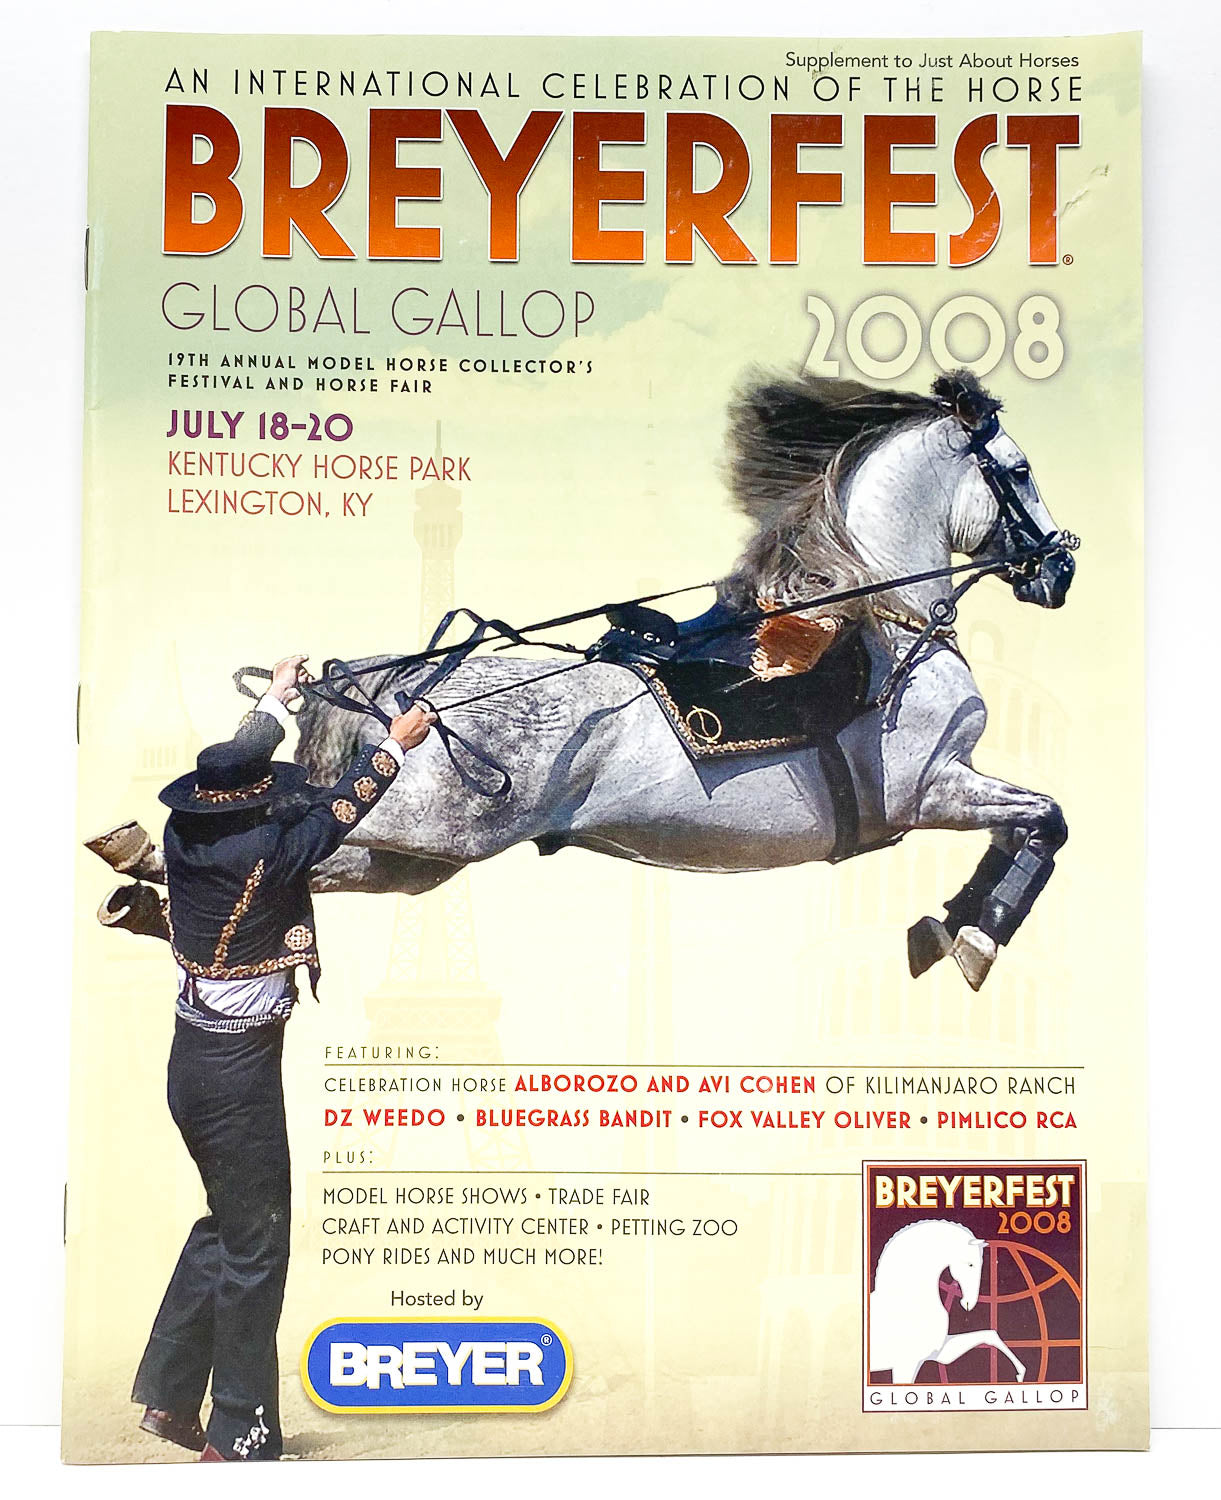 2008 Breyerfest JAH Supplement - Global Gallop